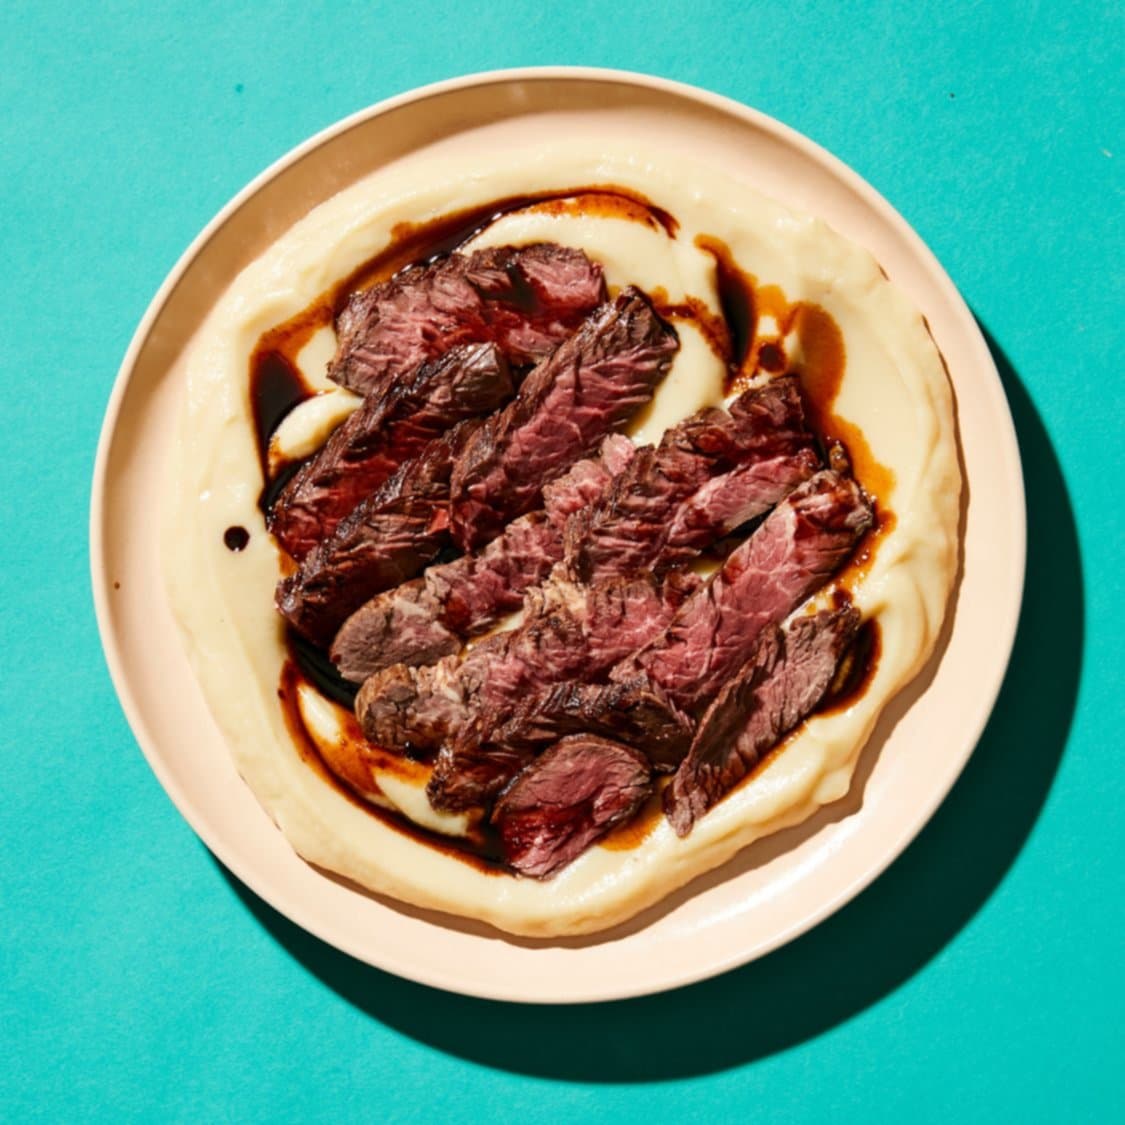 https://fleishigs.com/images/mobile-app/recipes/1992-list-grilled-hanger-steak.jpg